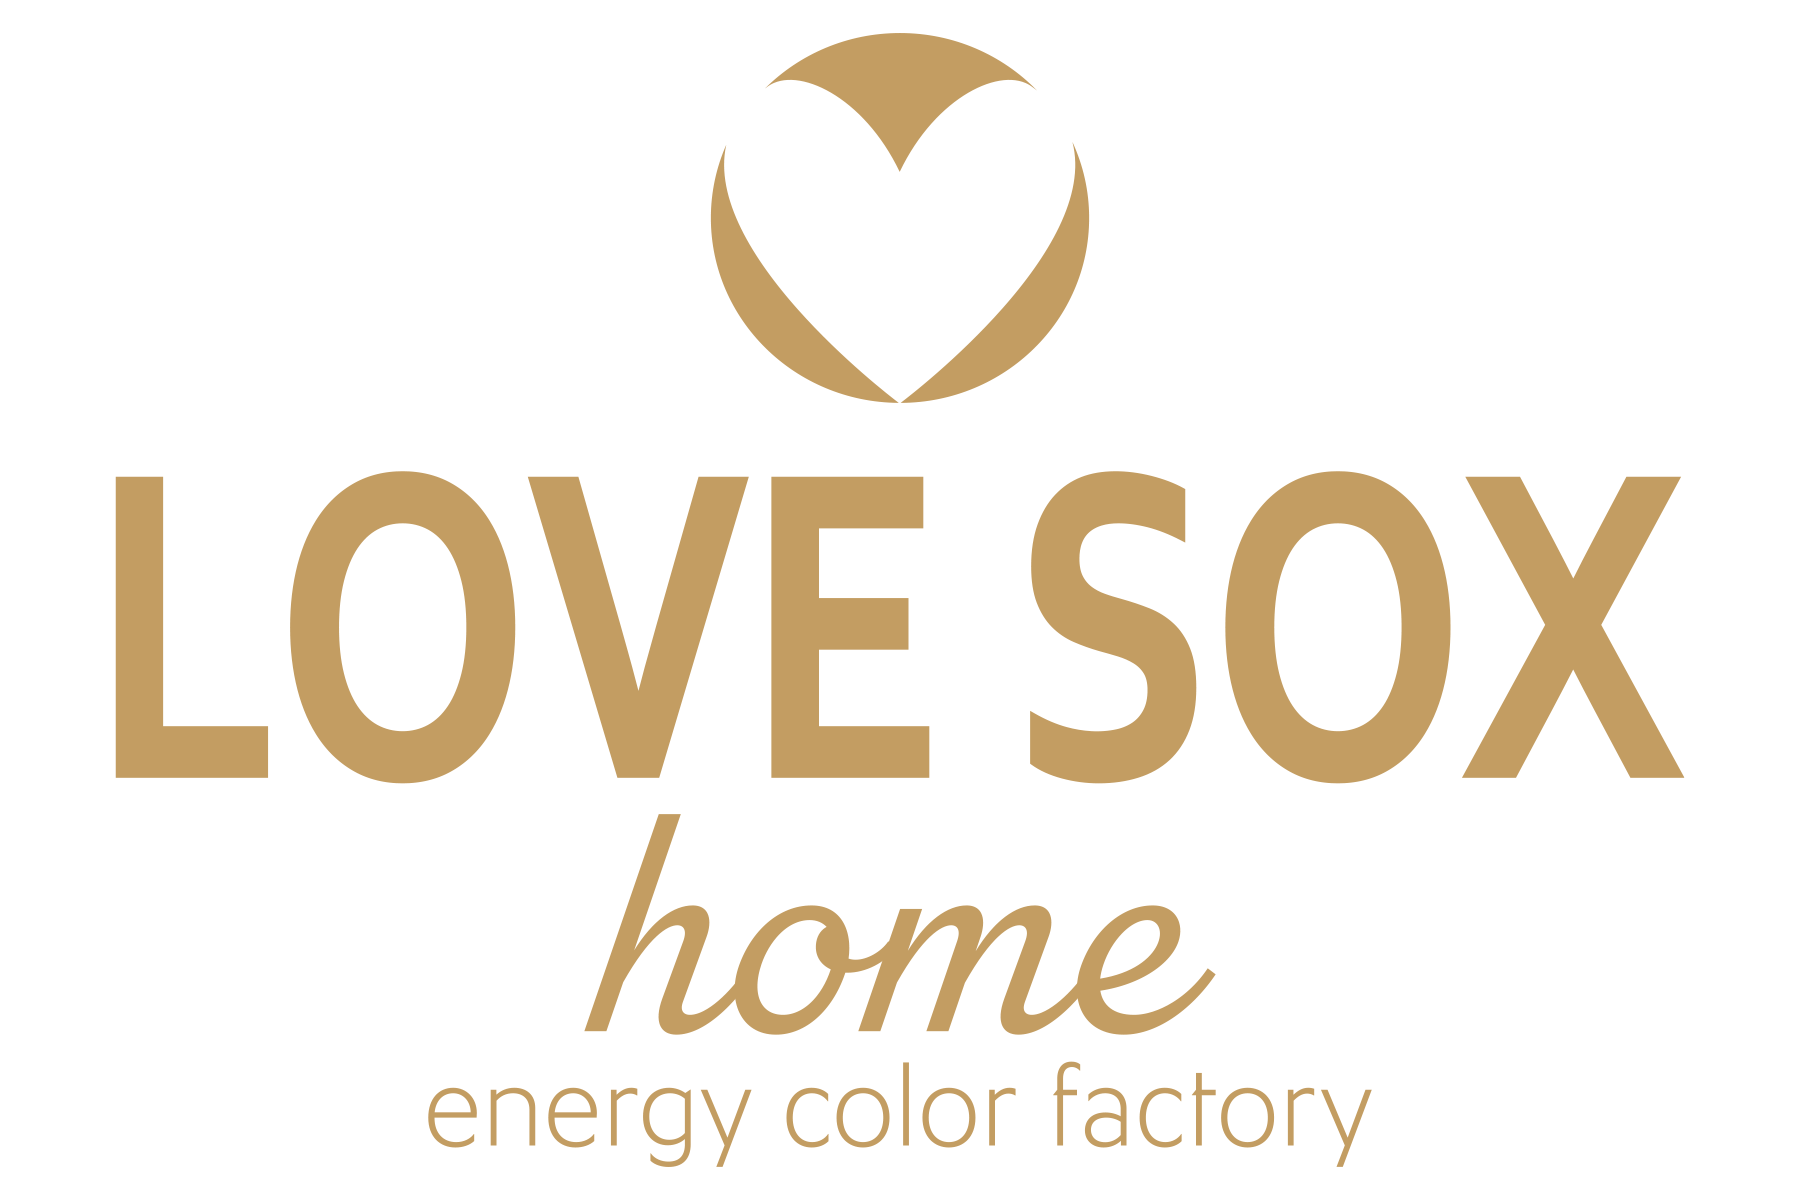 LOVESOX home